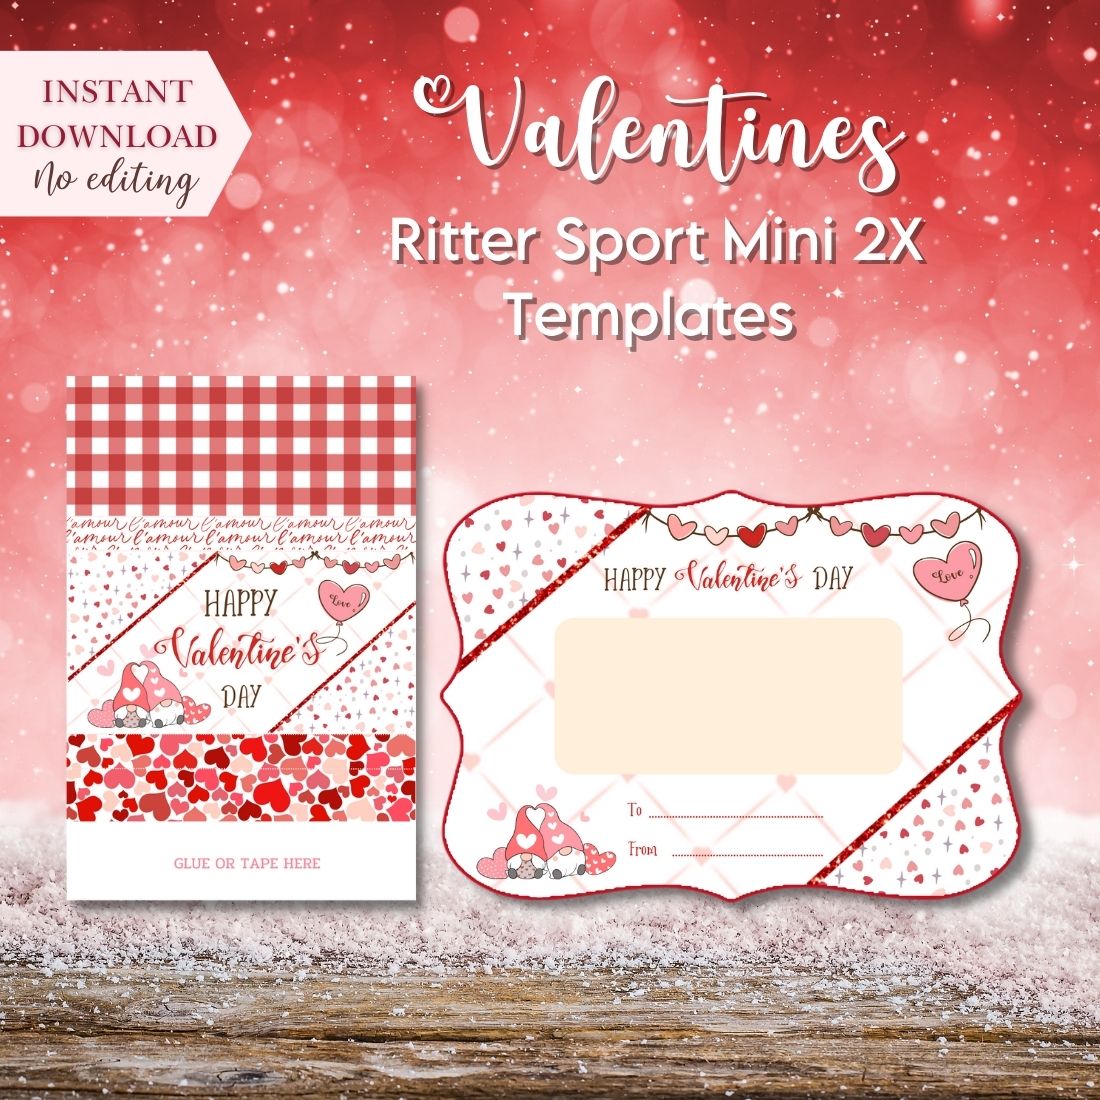 Valentine Ritter Sport Mini 2X Templates cover image.